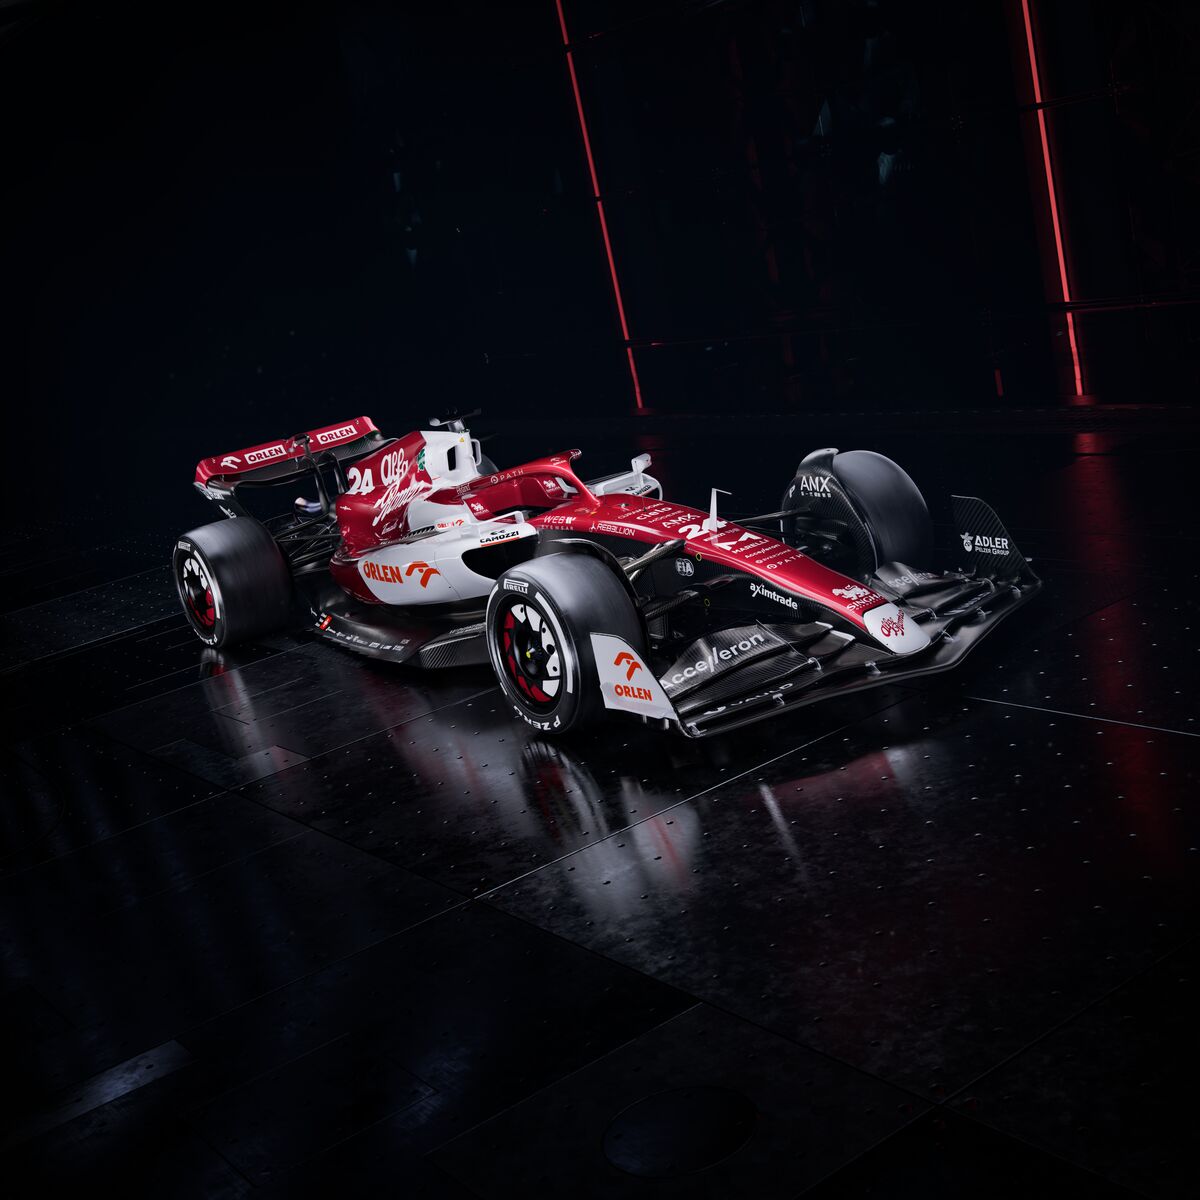 عش الحياة بأقصى سرعة مع أكسيم تريد في سبافات فورمولا 1 سنغافورة 2022